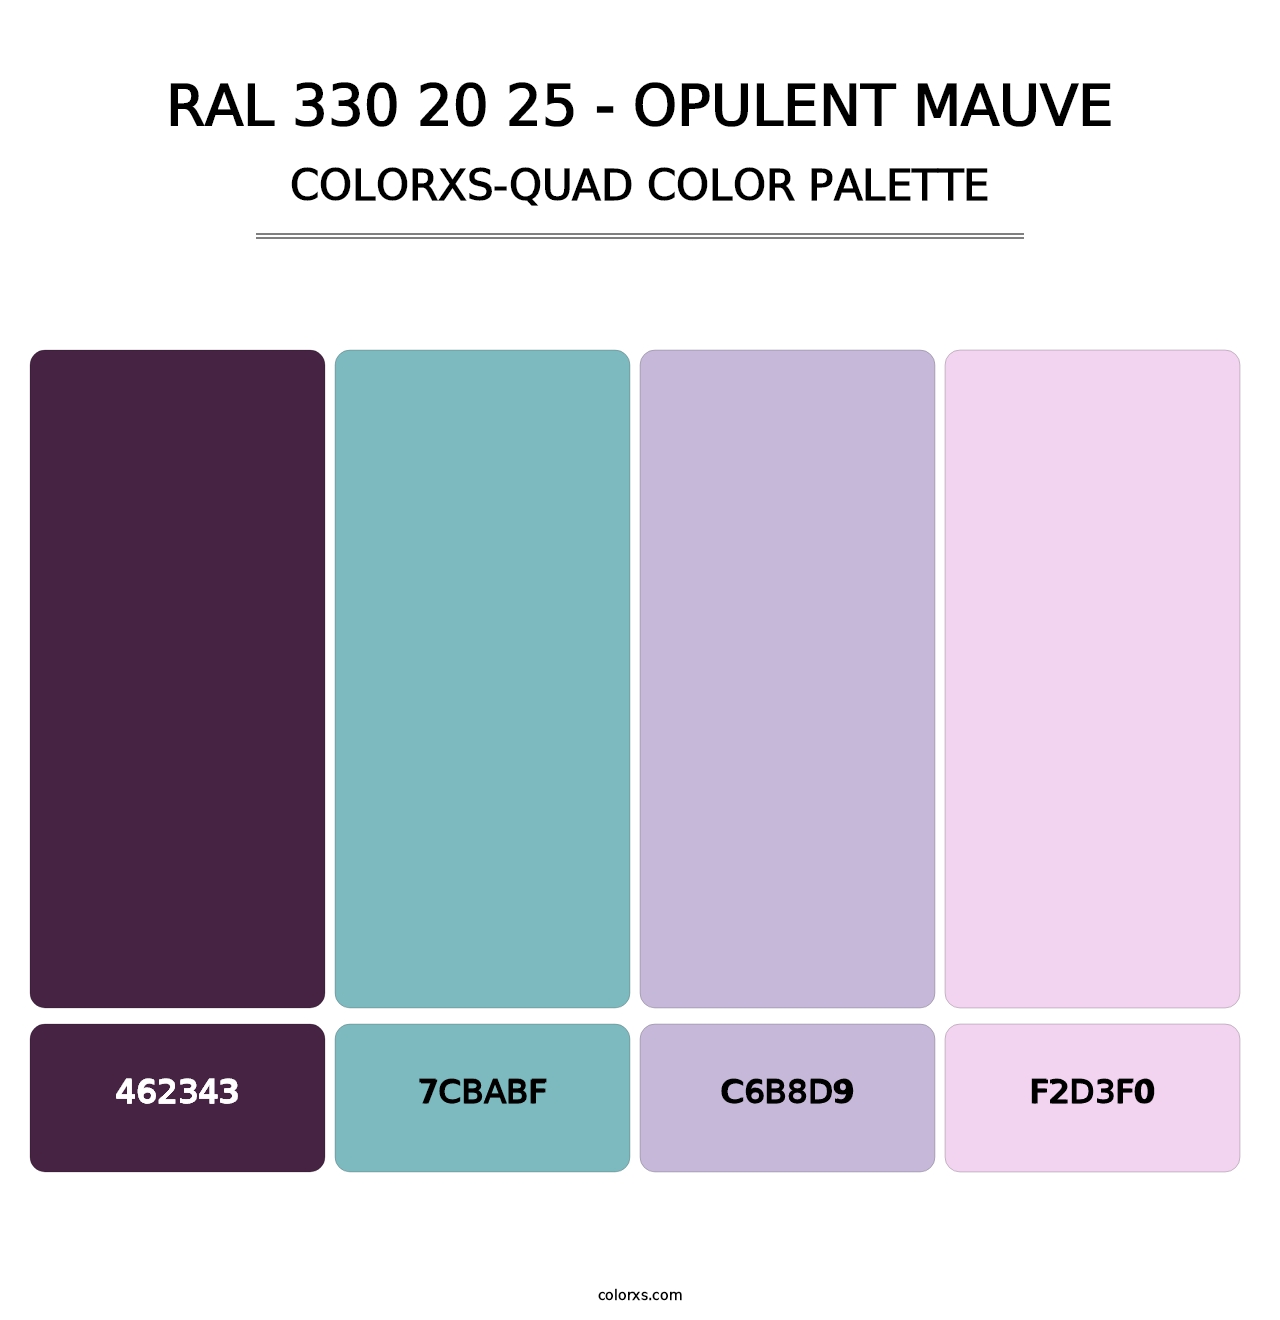 RAL 330 20 25 - Opulent Mauve - Colorxs Quad Palette